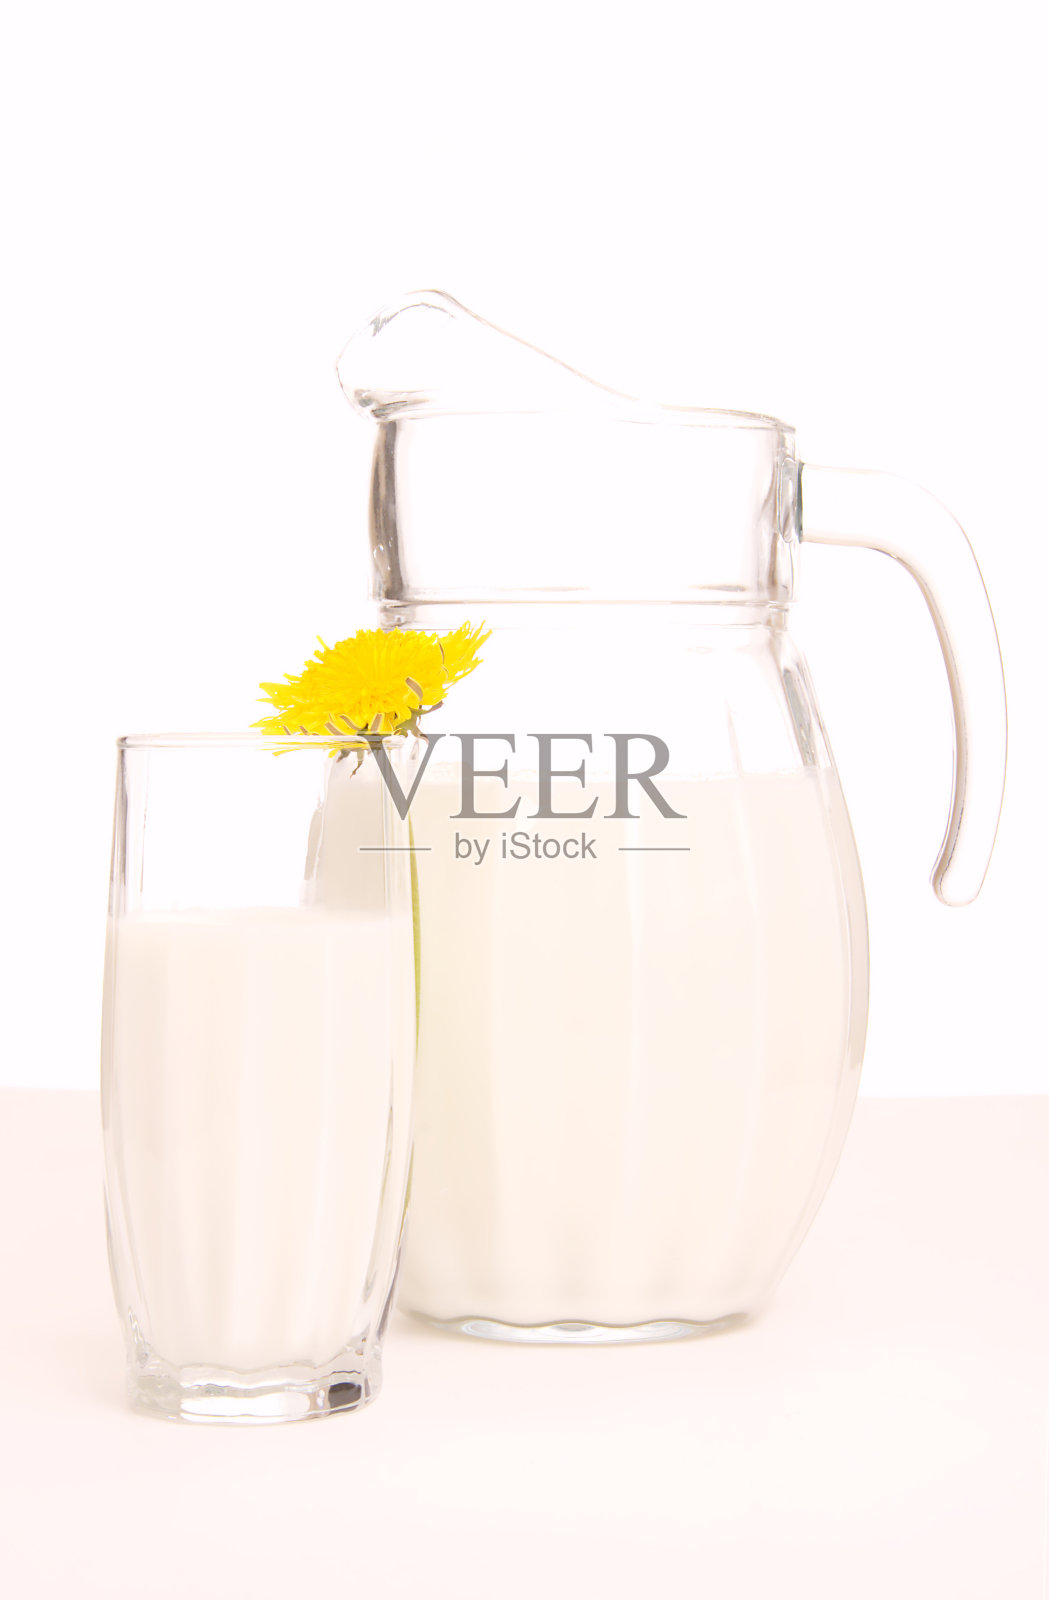 装着新鲜牛奶和黄色花朵的玻璃壶照片摄影图片